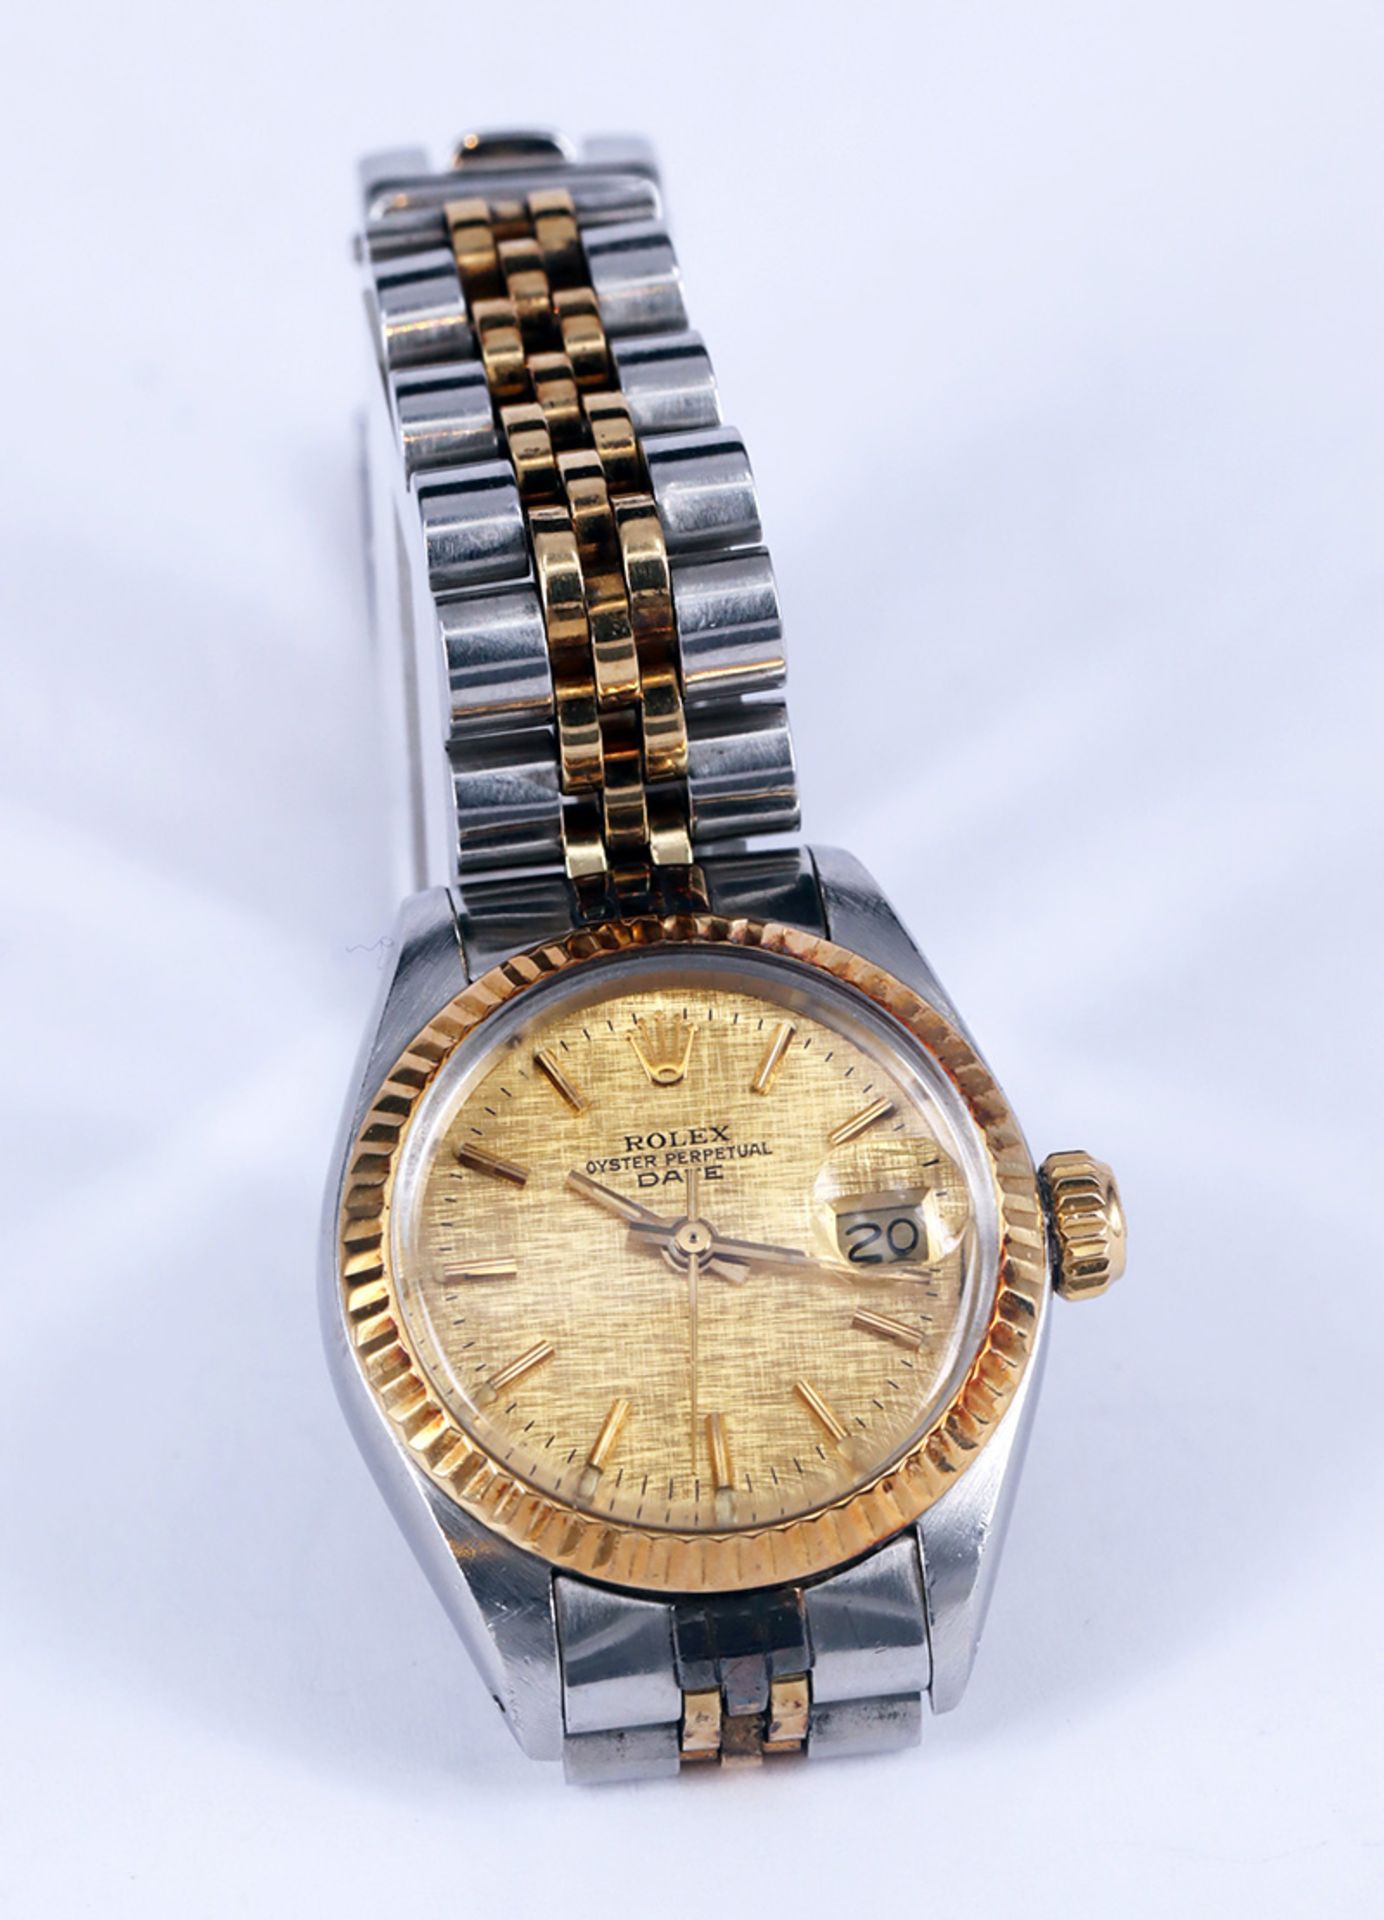 Rolex Damenarmbanduhr, Oyster Perpetual Date, bicolor, Zifferblatt mit Krone auf der 12, großer